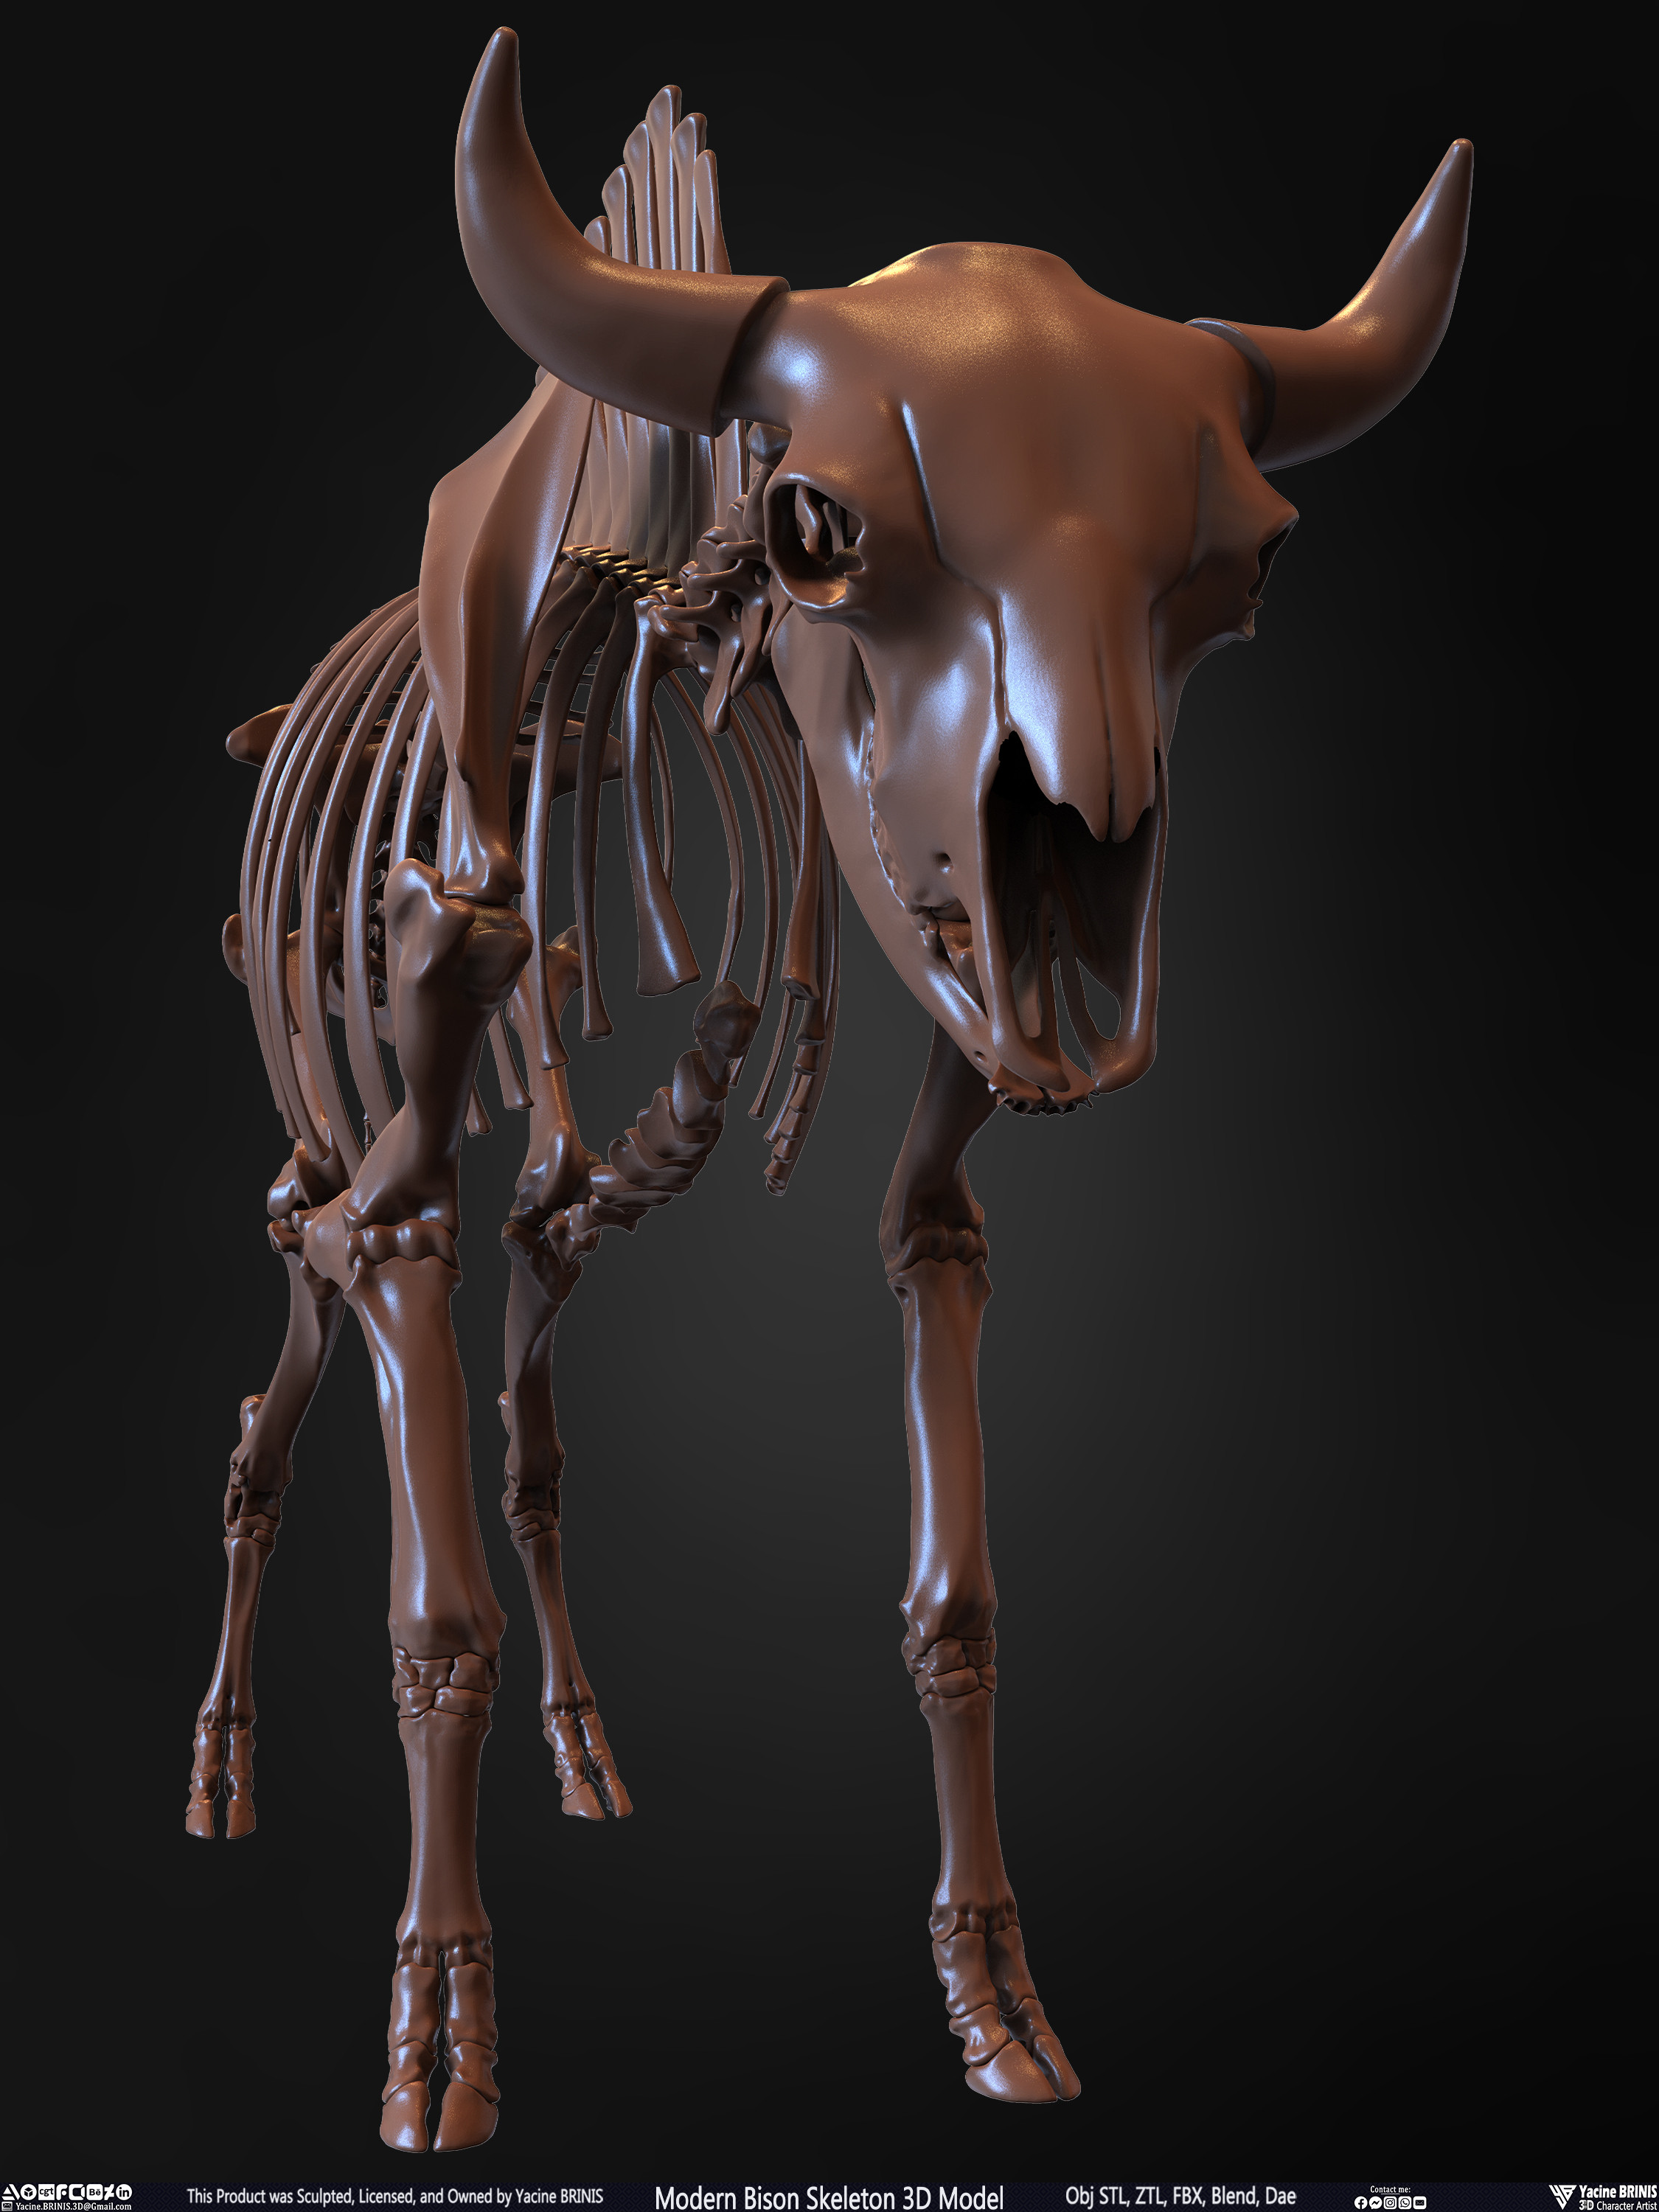 Modern Bison Skeleton 3D Model Sculpted by Yacine BRINIS Set 008